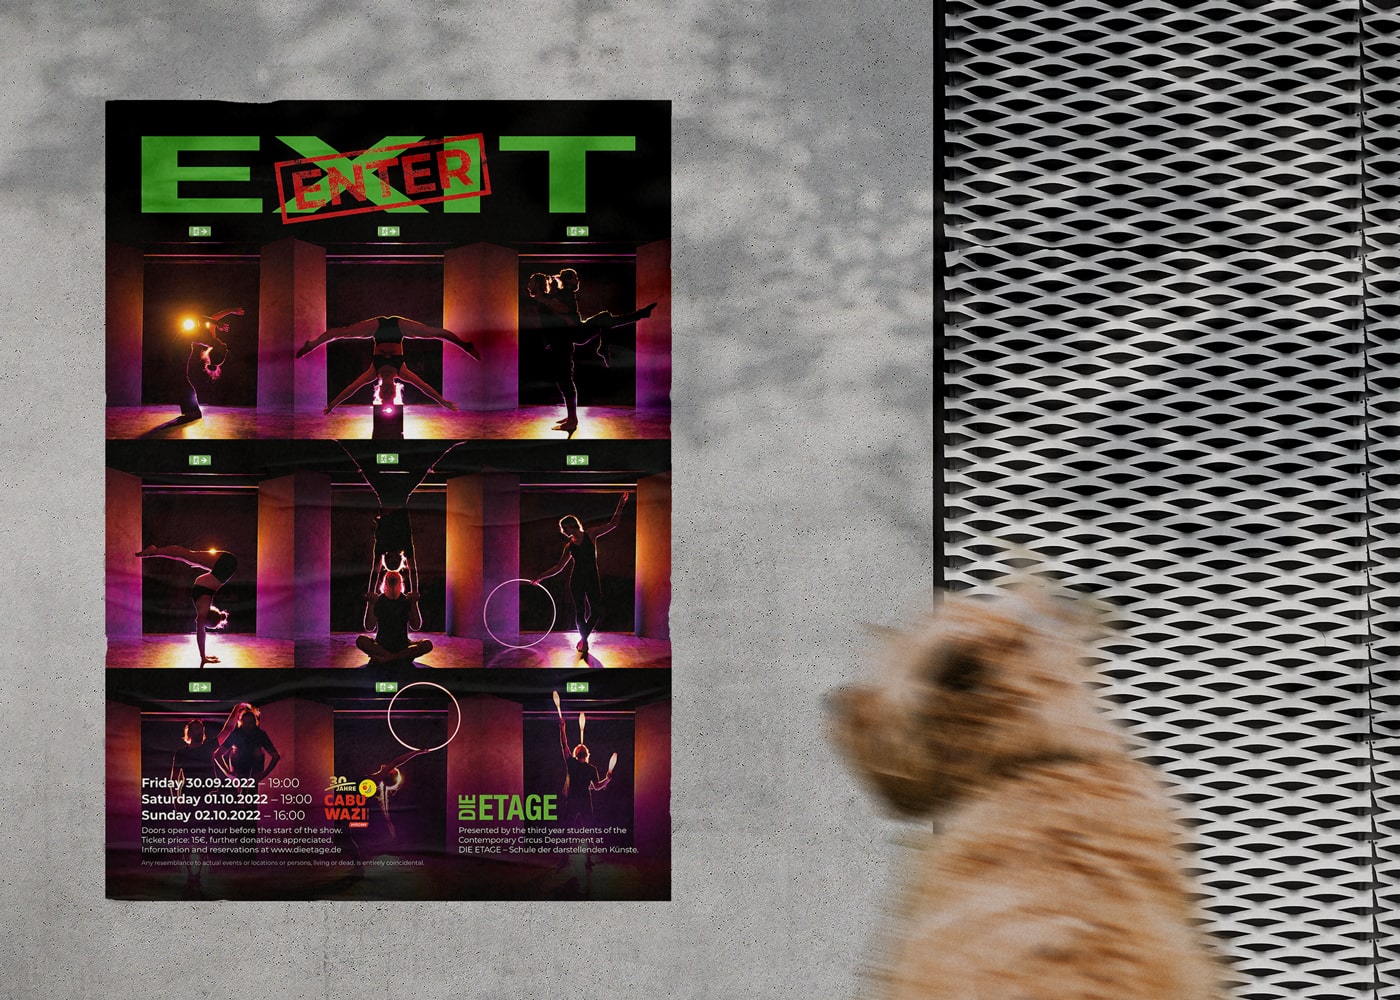 Die Etage, affiche pour le show "Exit Enter", 2022